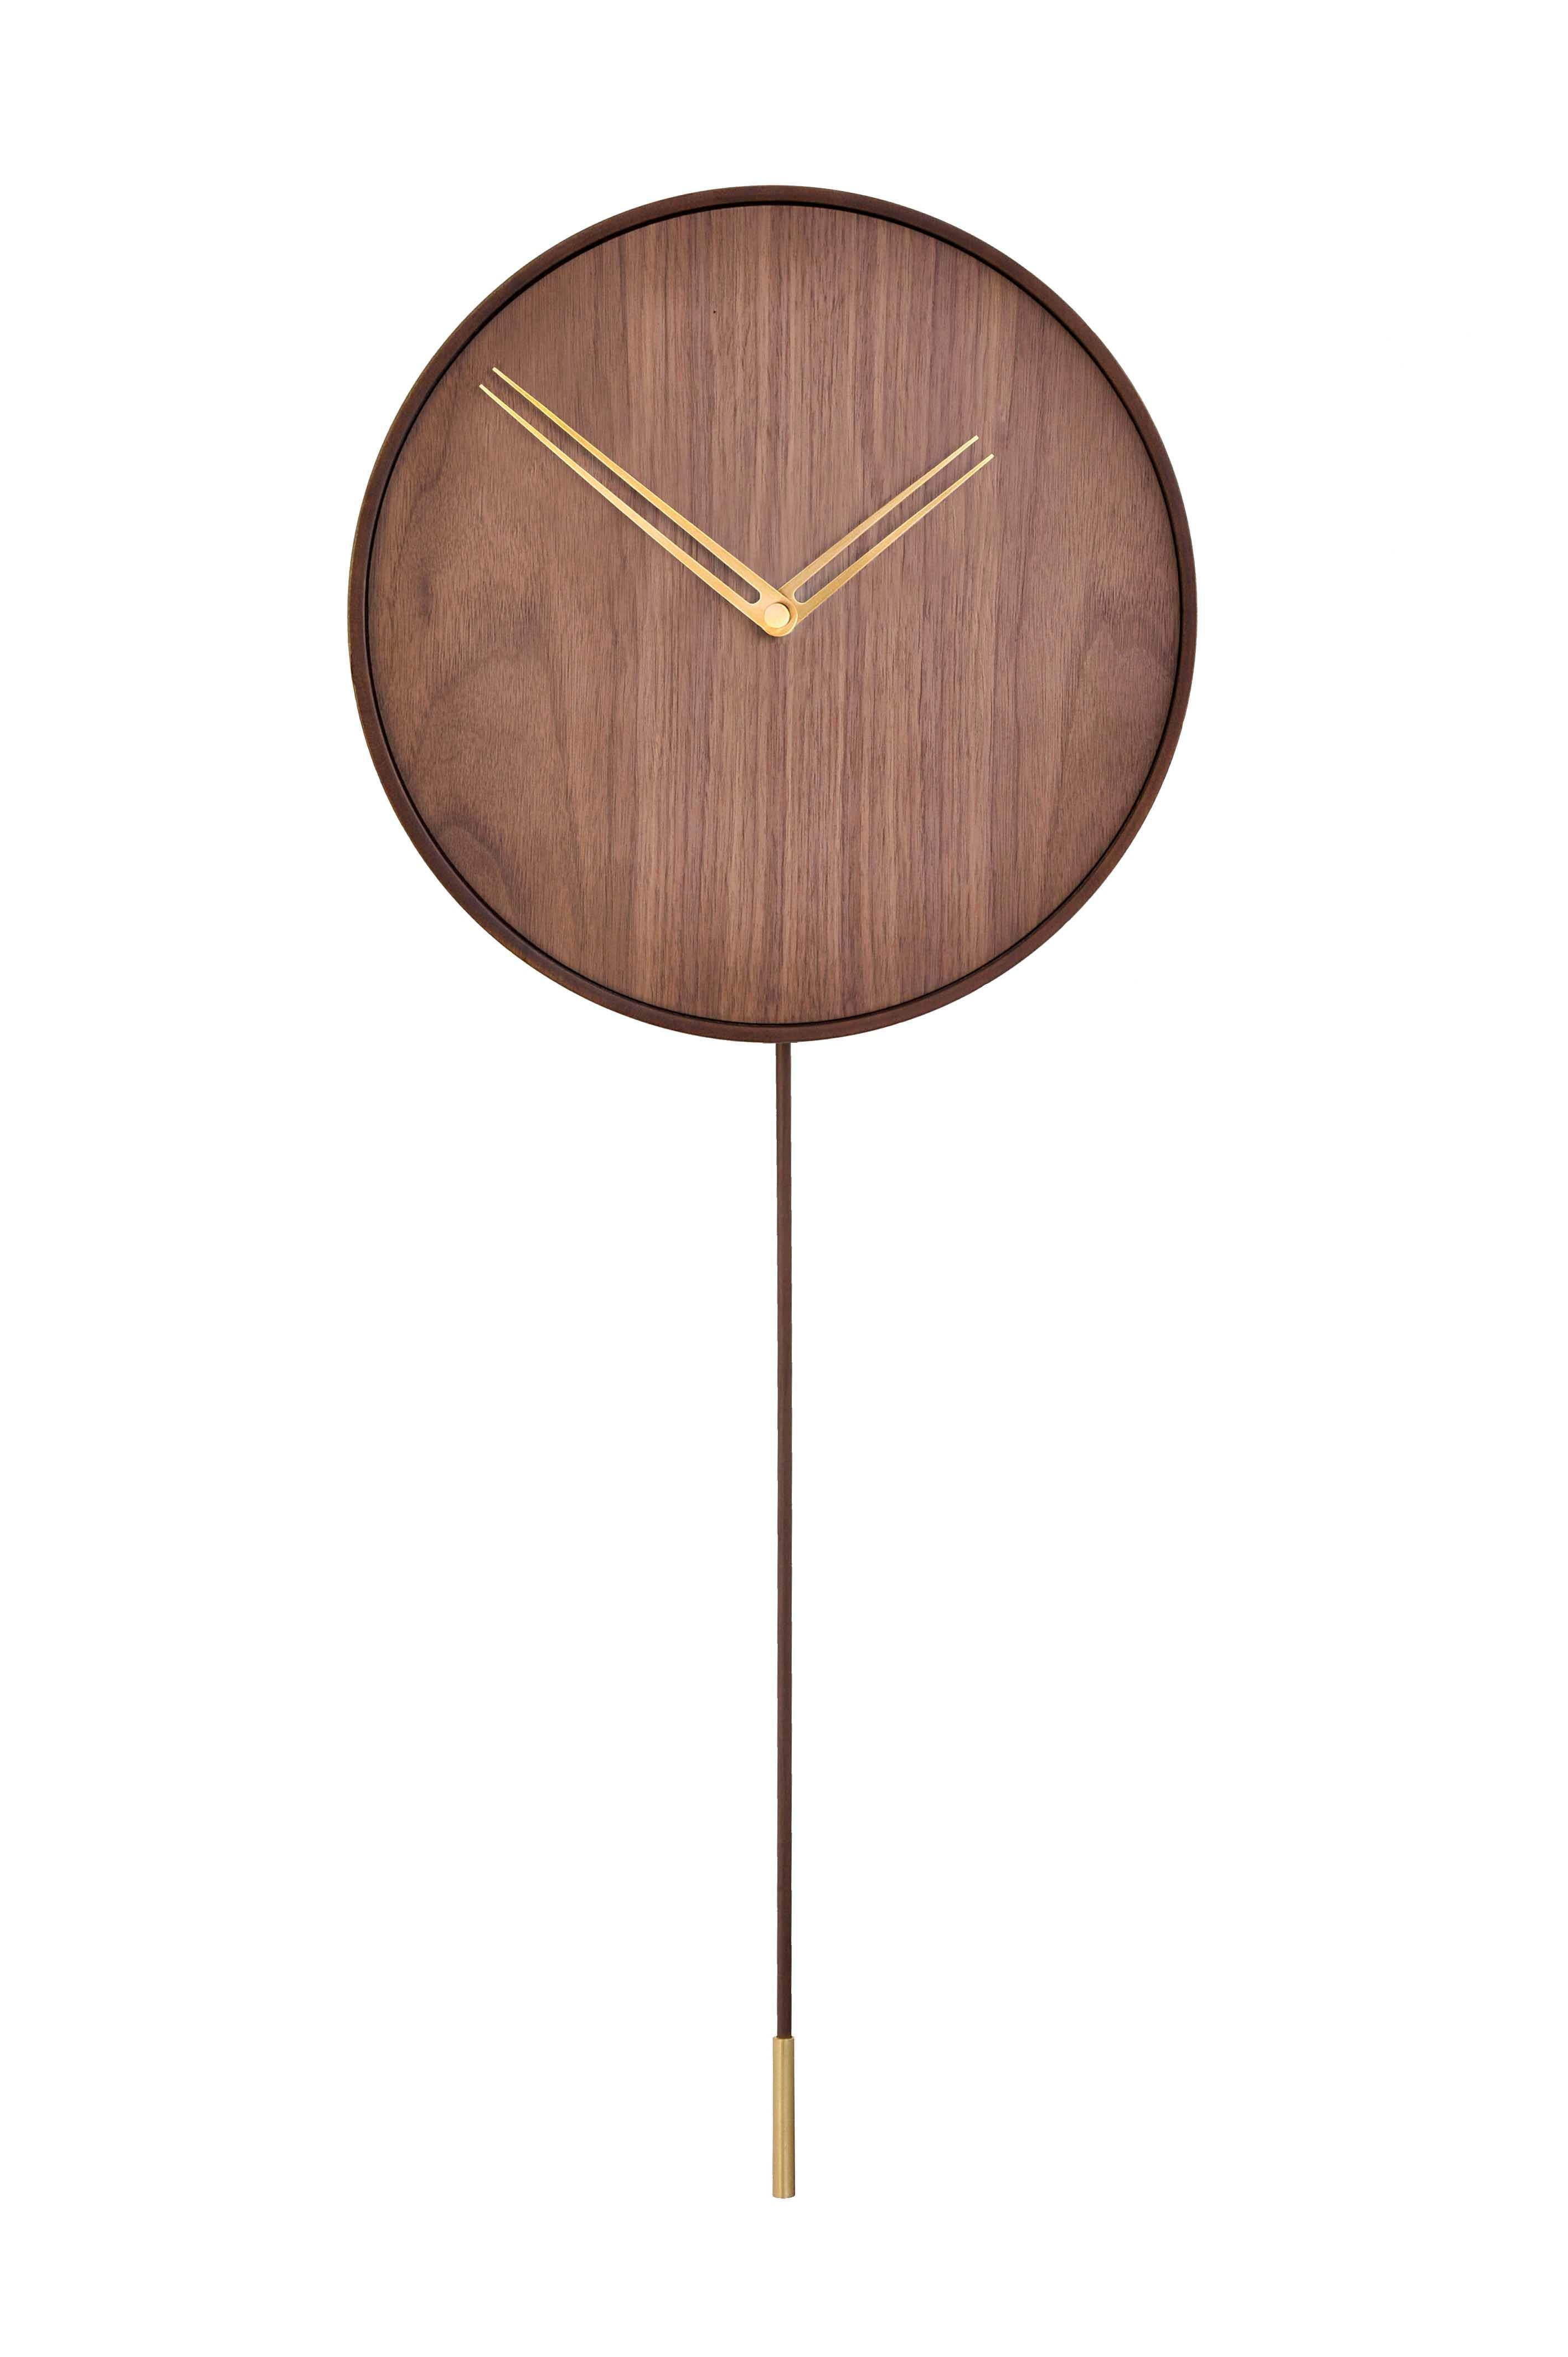 Parmi les montres tendance et avant-gardistes proposées par la marque Nomon, figure l'horloge murale Swing G. Il présente un design innovant utilisant des tons sombres de noyer et des aiguilles d'or. Il fait partie de la collection Gold N qui se